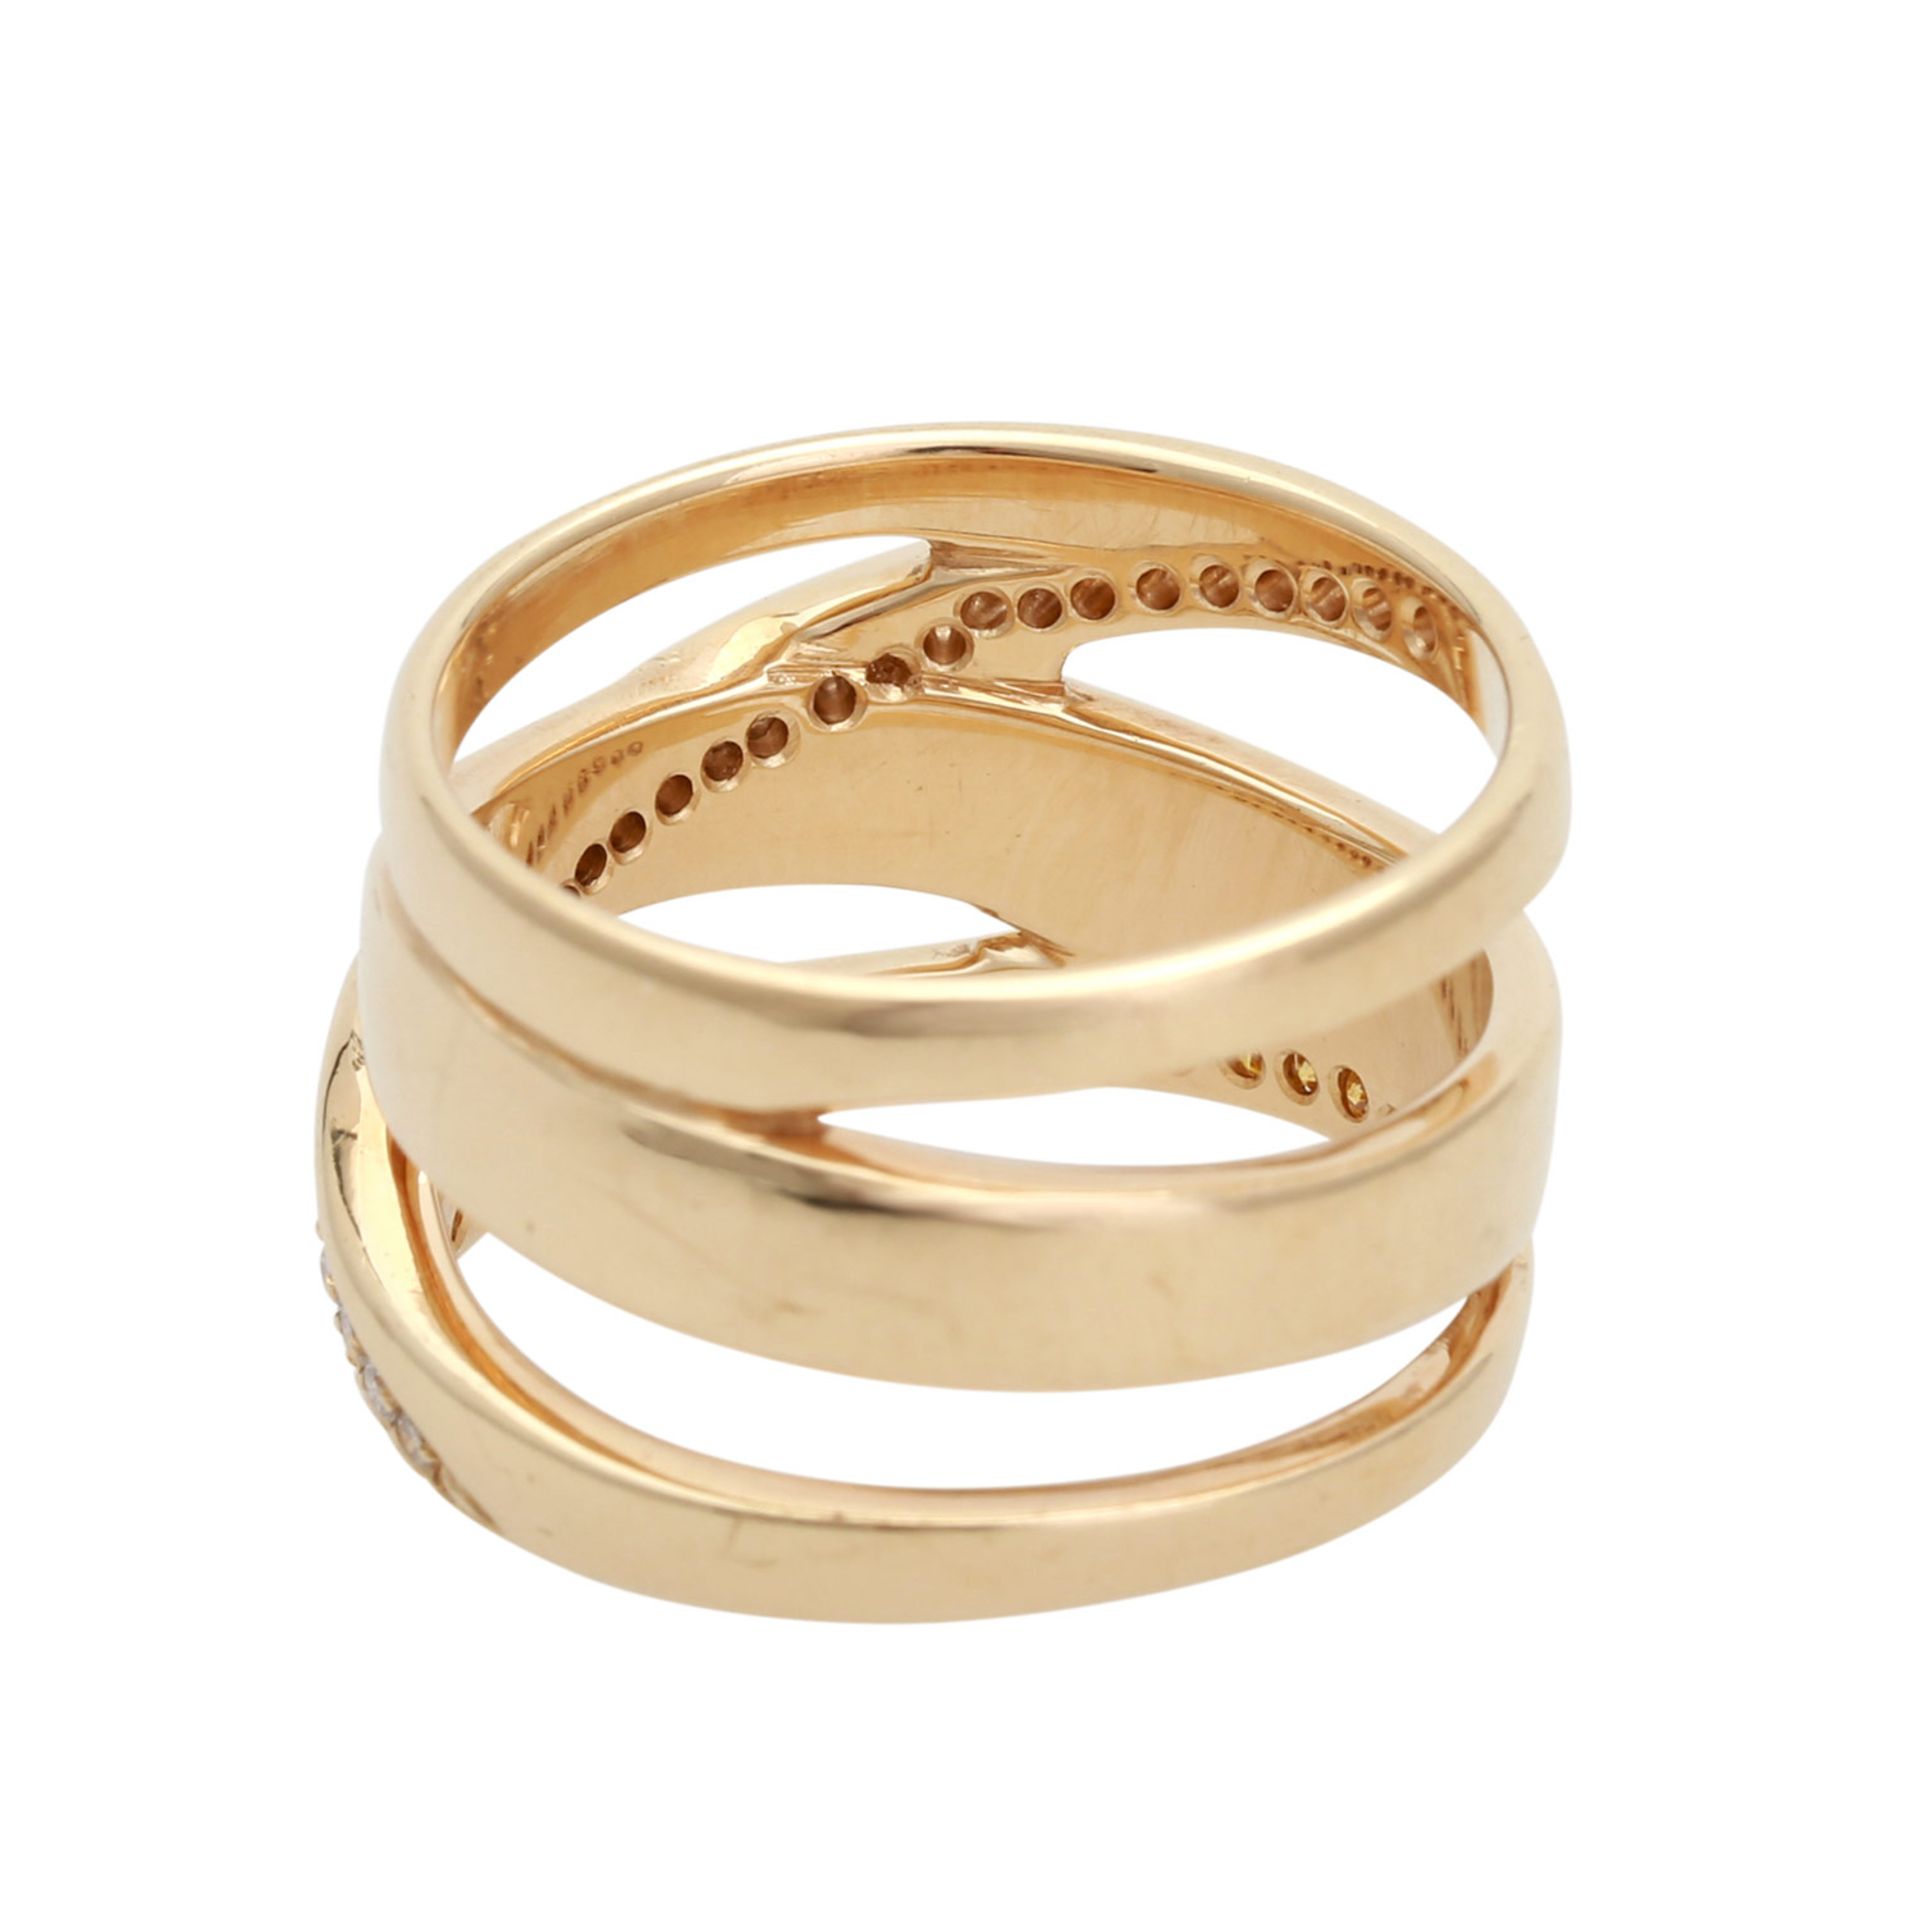 Ring mit 28 weißen und 23 gelben Brillanten, zus. ca. 0,51 ct, guter Farb- und Reinheitsgrad, - Bild 3 aus 4